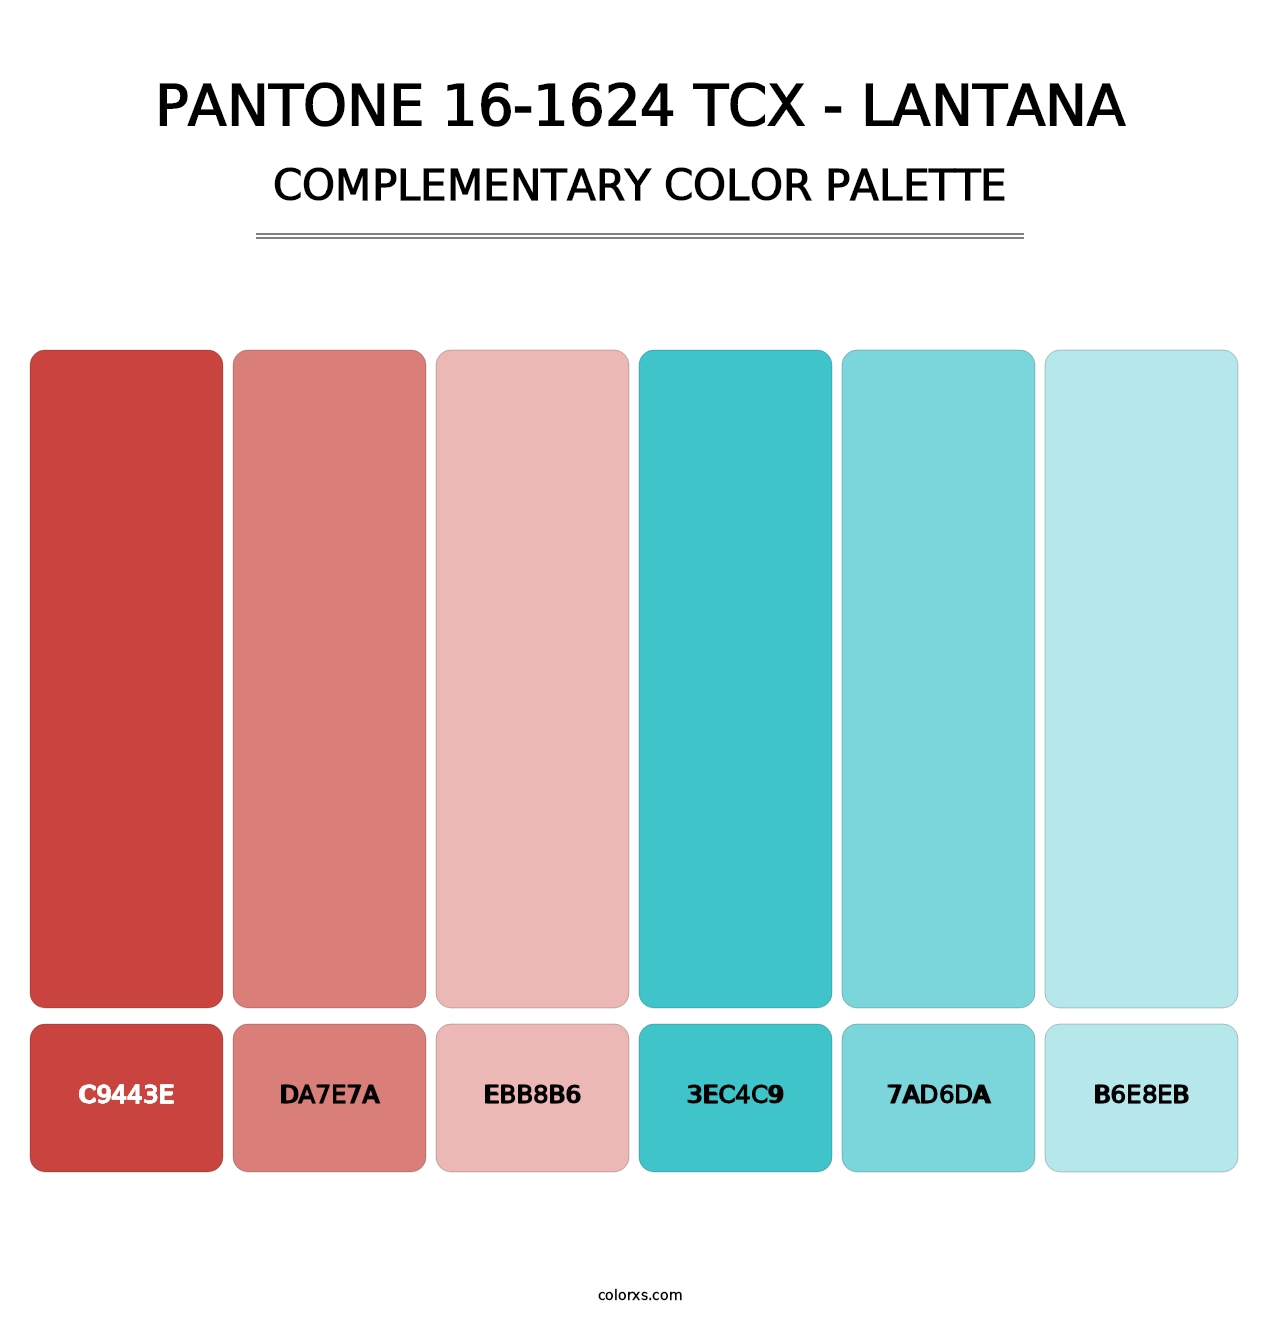 PANTONE 16-1624 TCX - Lantana - Complementary Color Palette